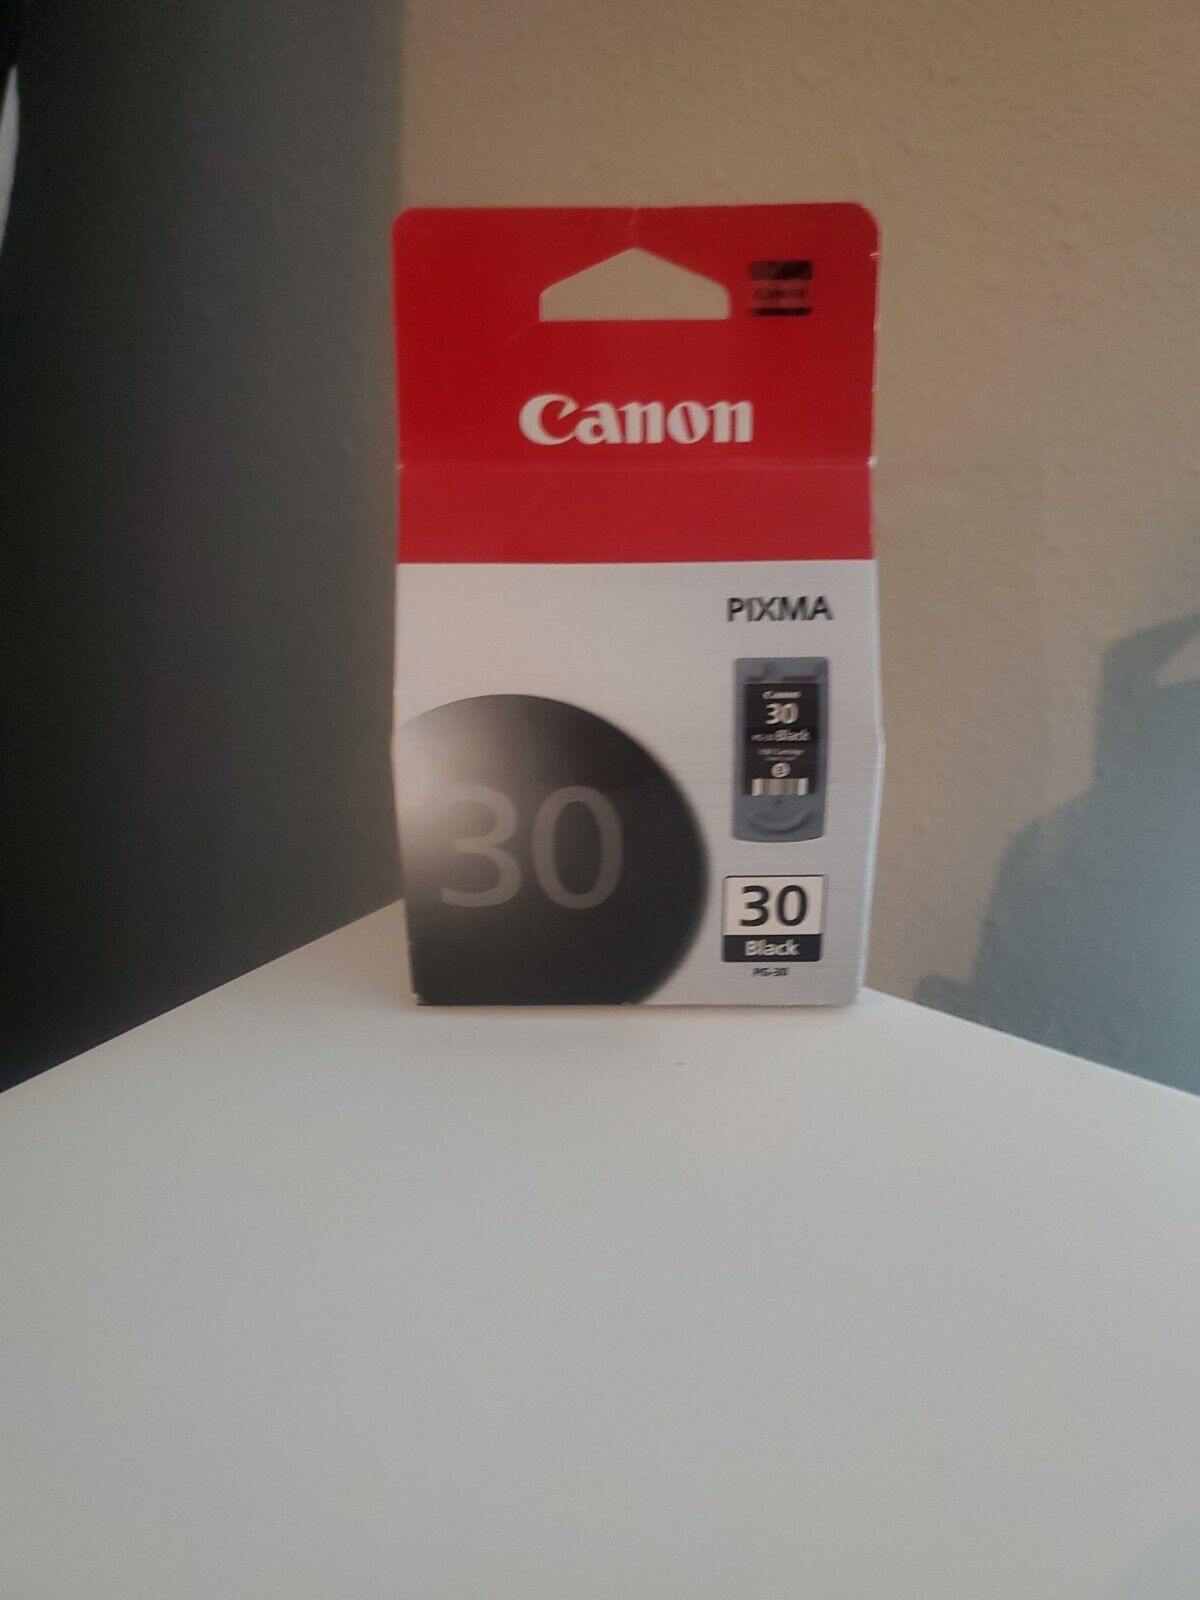 1 New in Box Genuine Canon Pixma PG-30 Fine Black Ink Cartridge Pixma Series